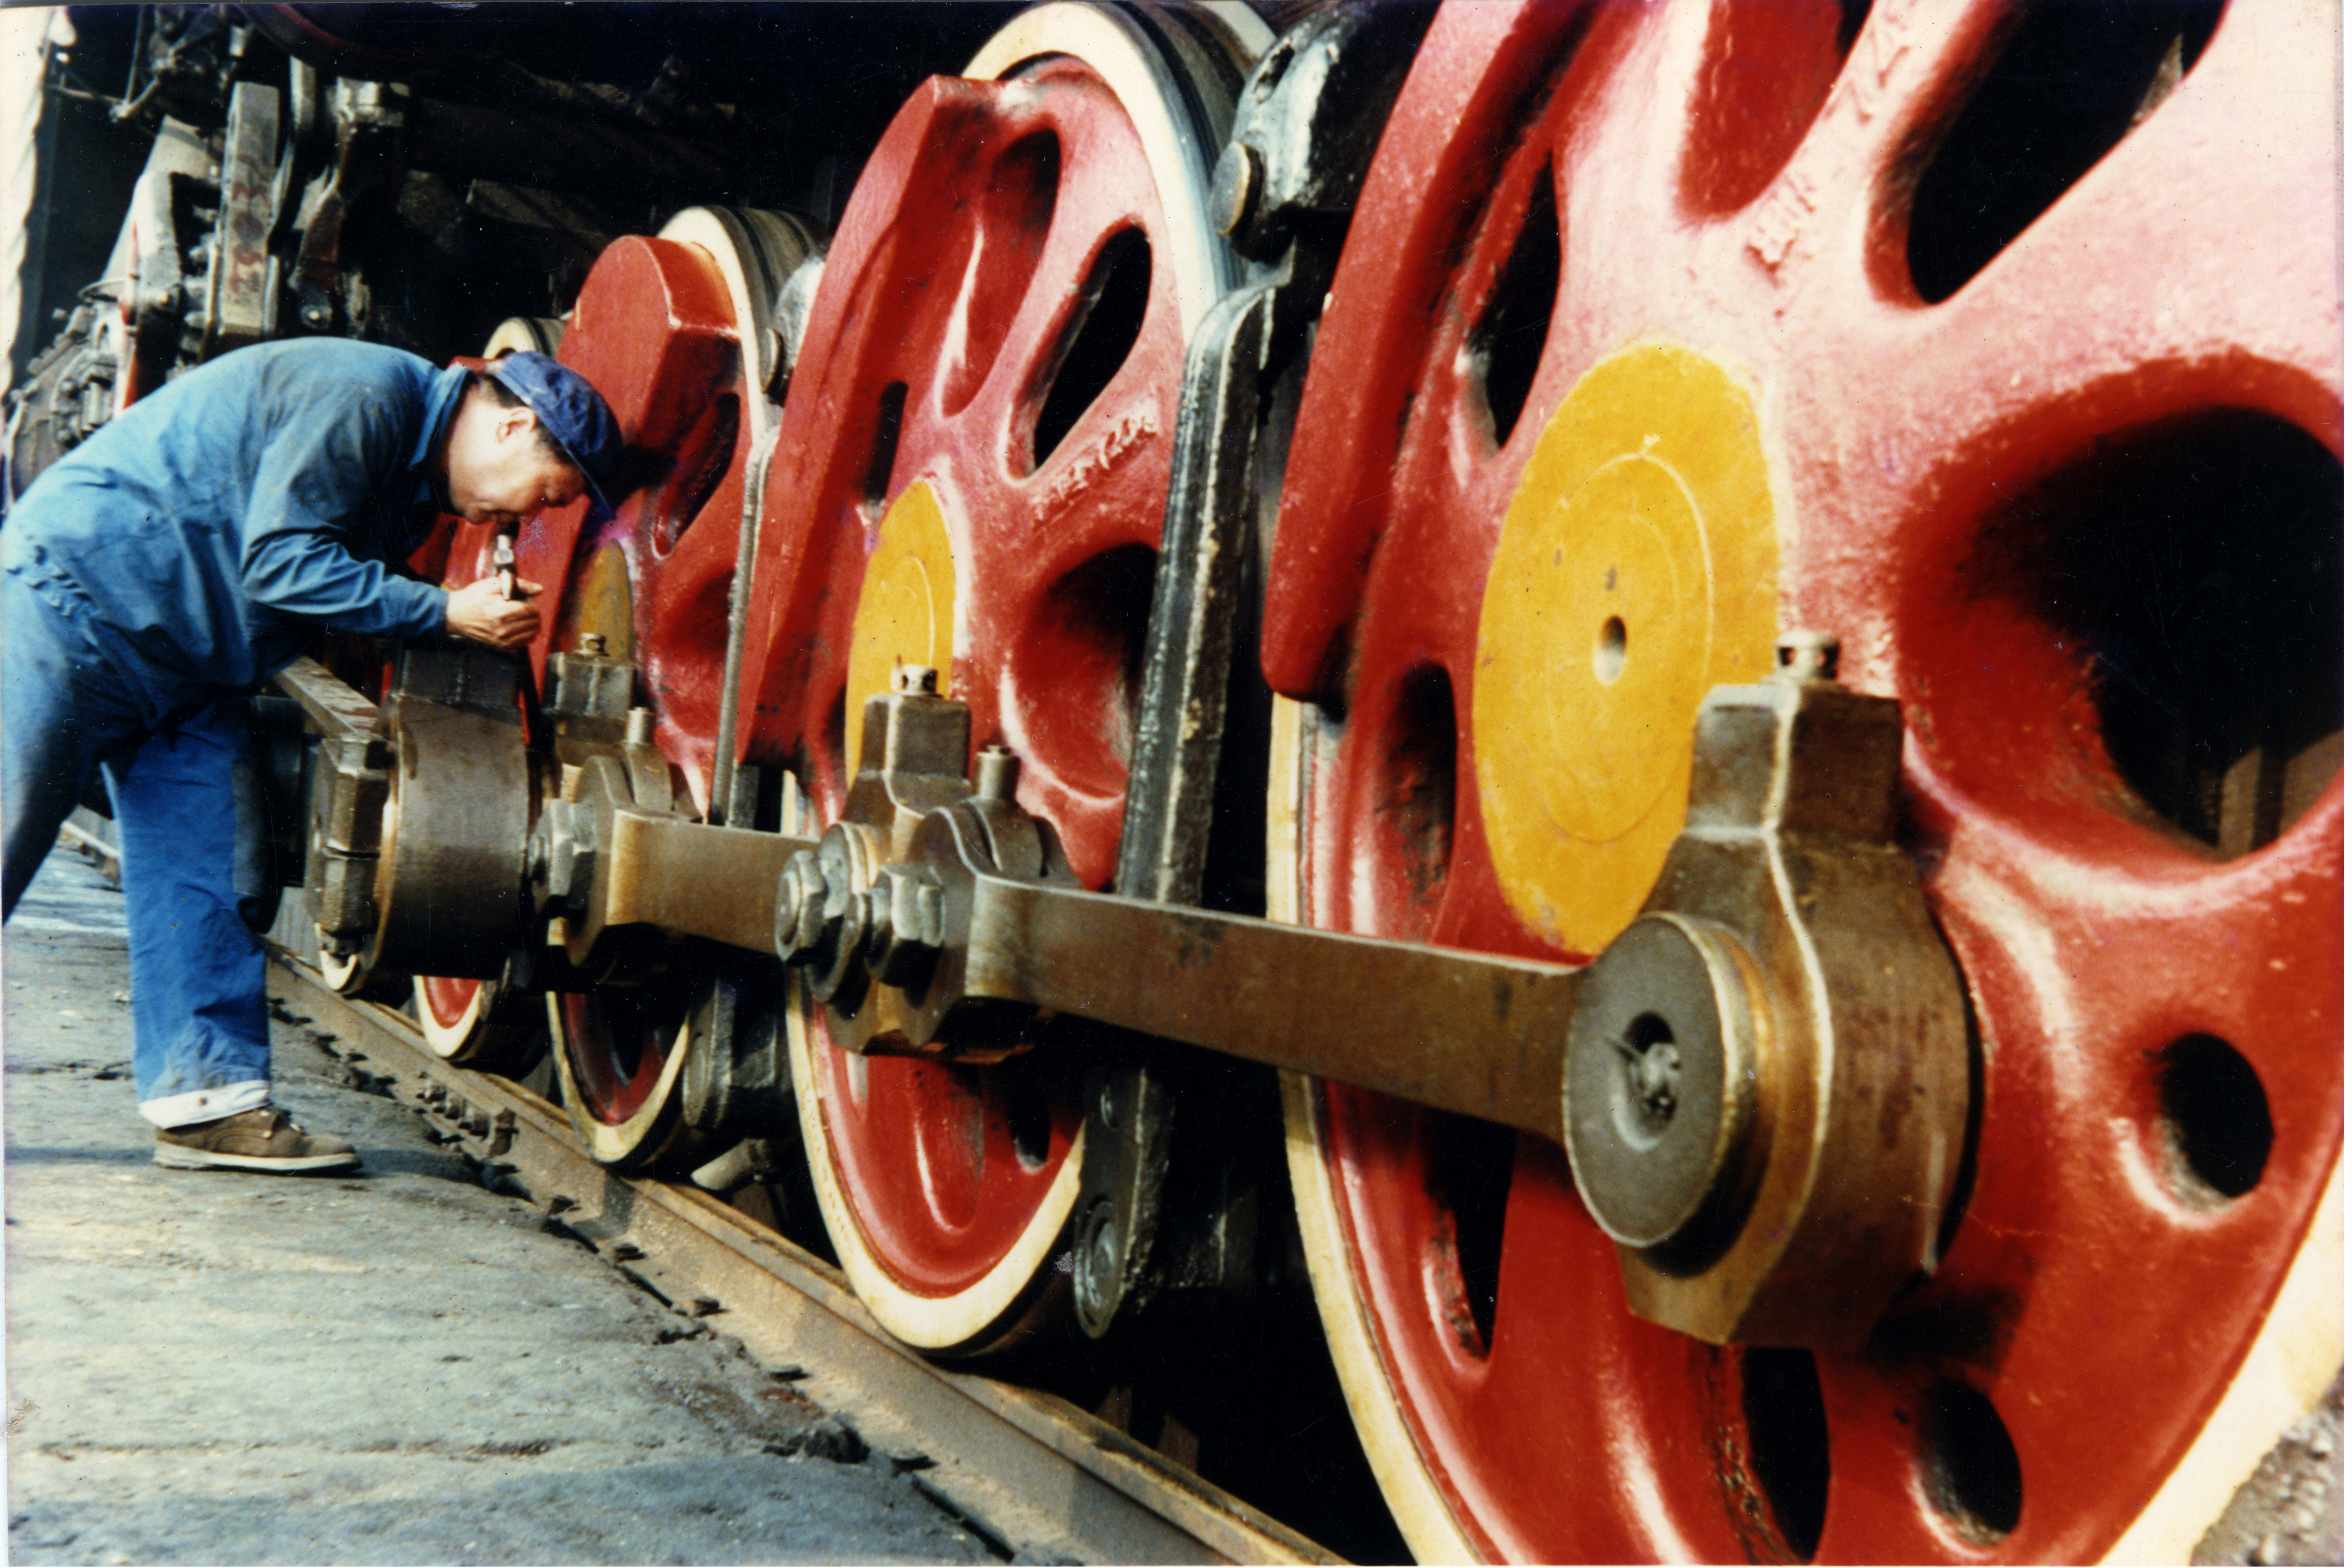 【改革•印记——看中国发展】赶上好时代的铁路修车人